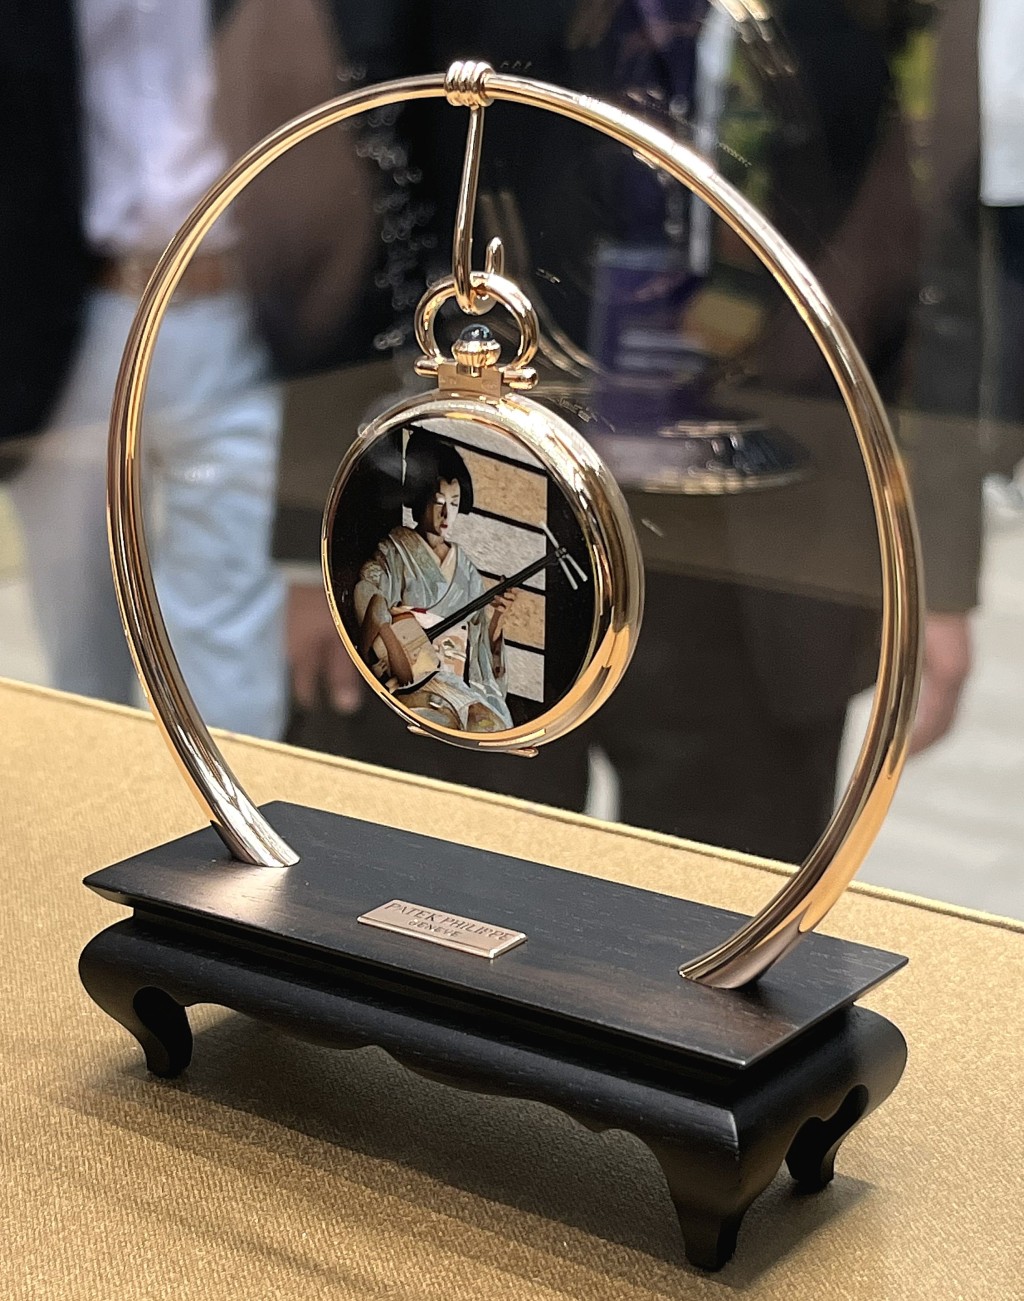 珍稀工藝展區展出多達40件呈現日本傳統文化的珍品與限量版時計作品。